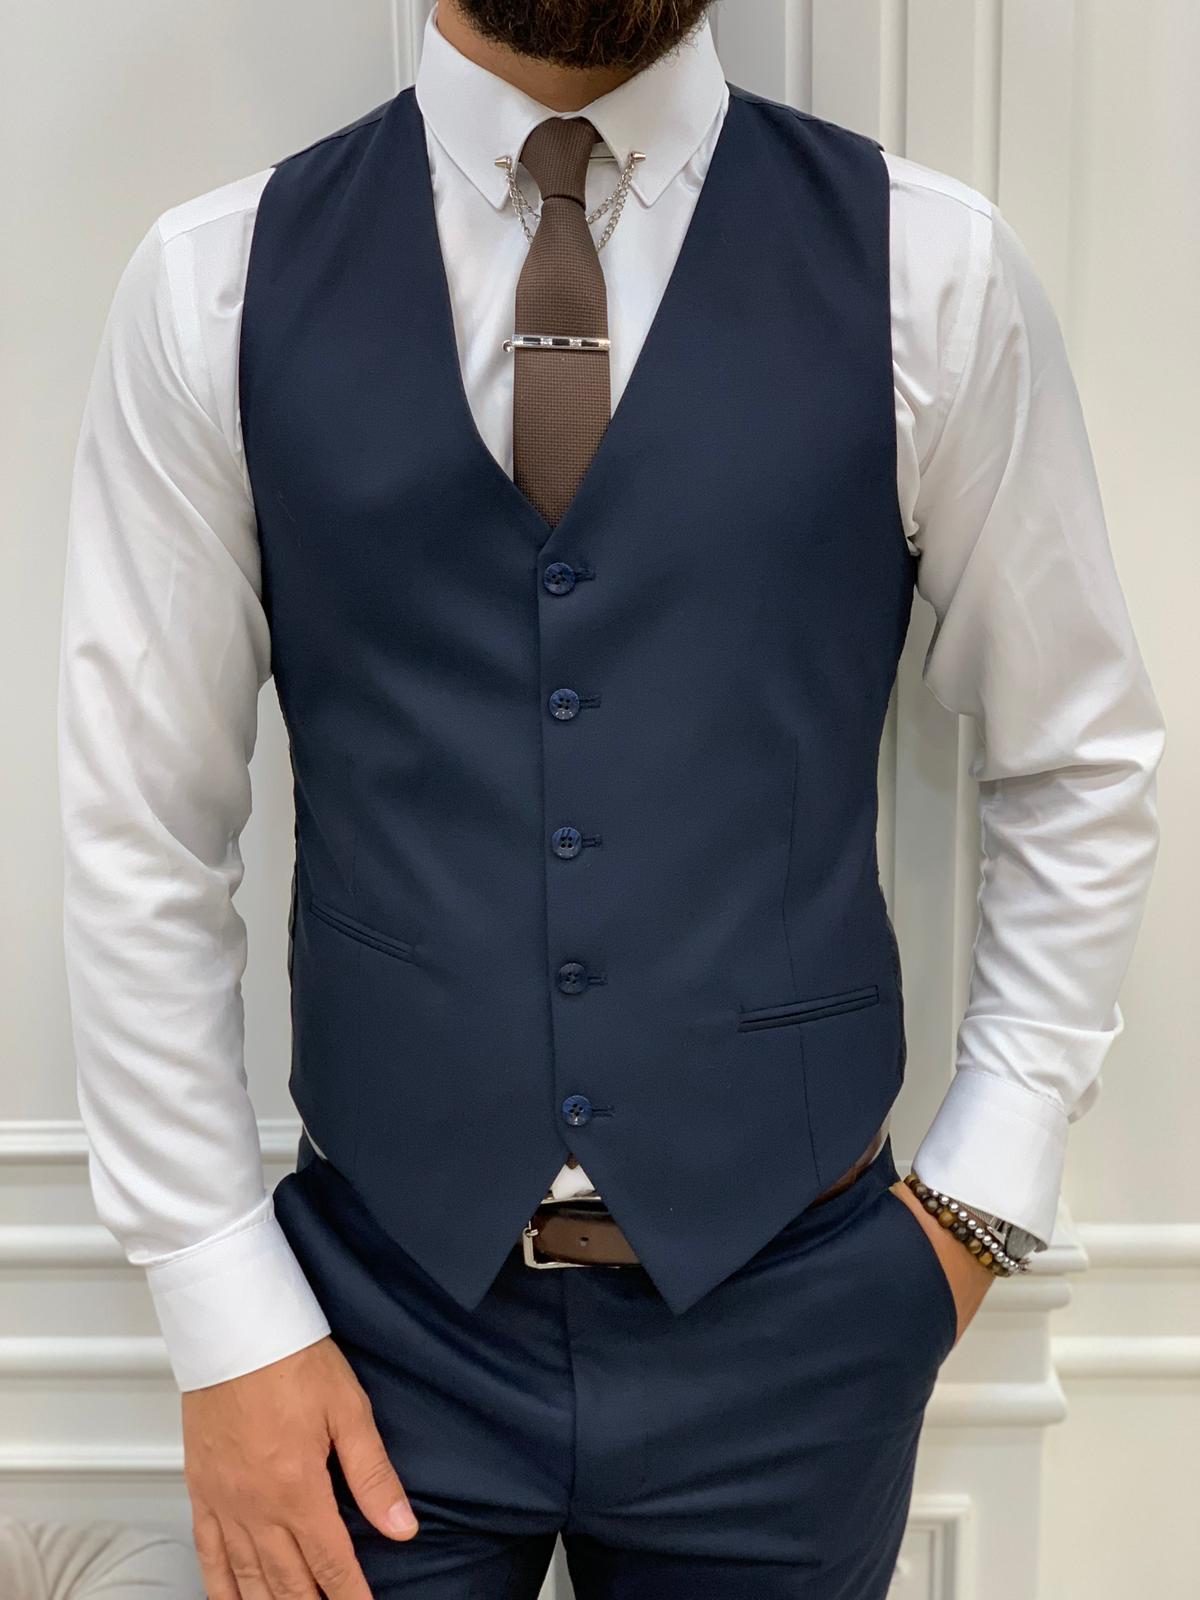 Barrua Navy Blue Slim Fit Peak Lapel Striped Suit